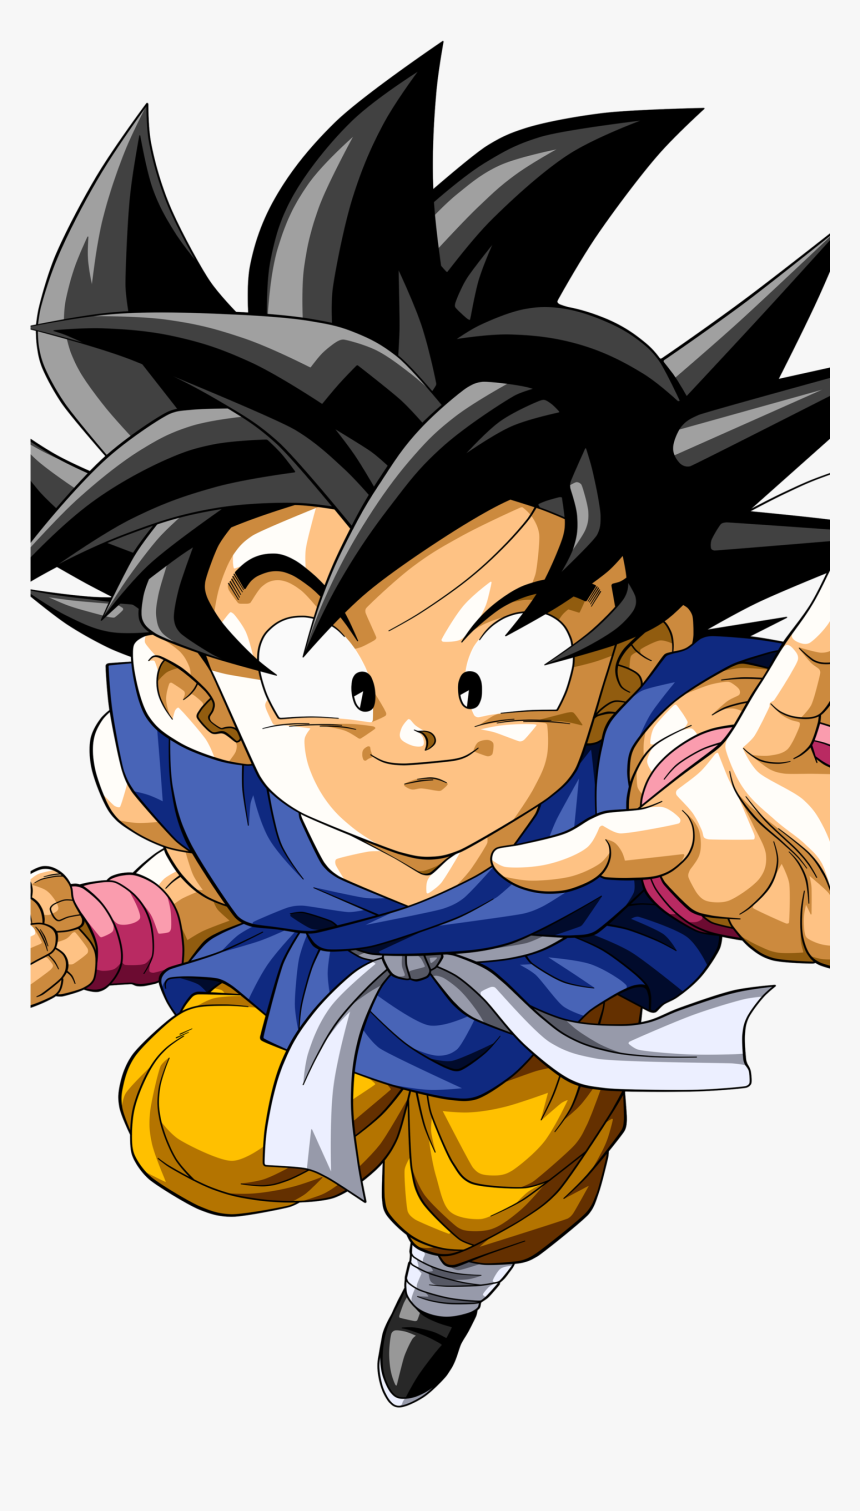 Kid Goku Anime / Dragon Ball Gt Mobile Wallpaper Son Goku Wallpaper Dragon Ball Anime, HD Png Download, Transparent Png Image